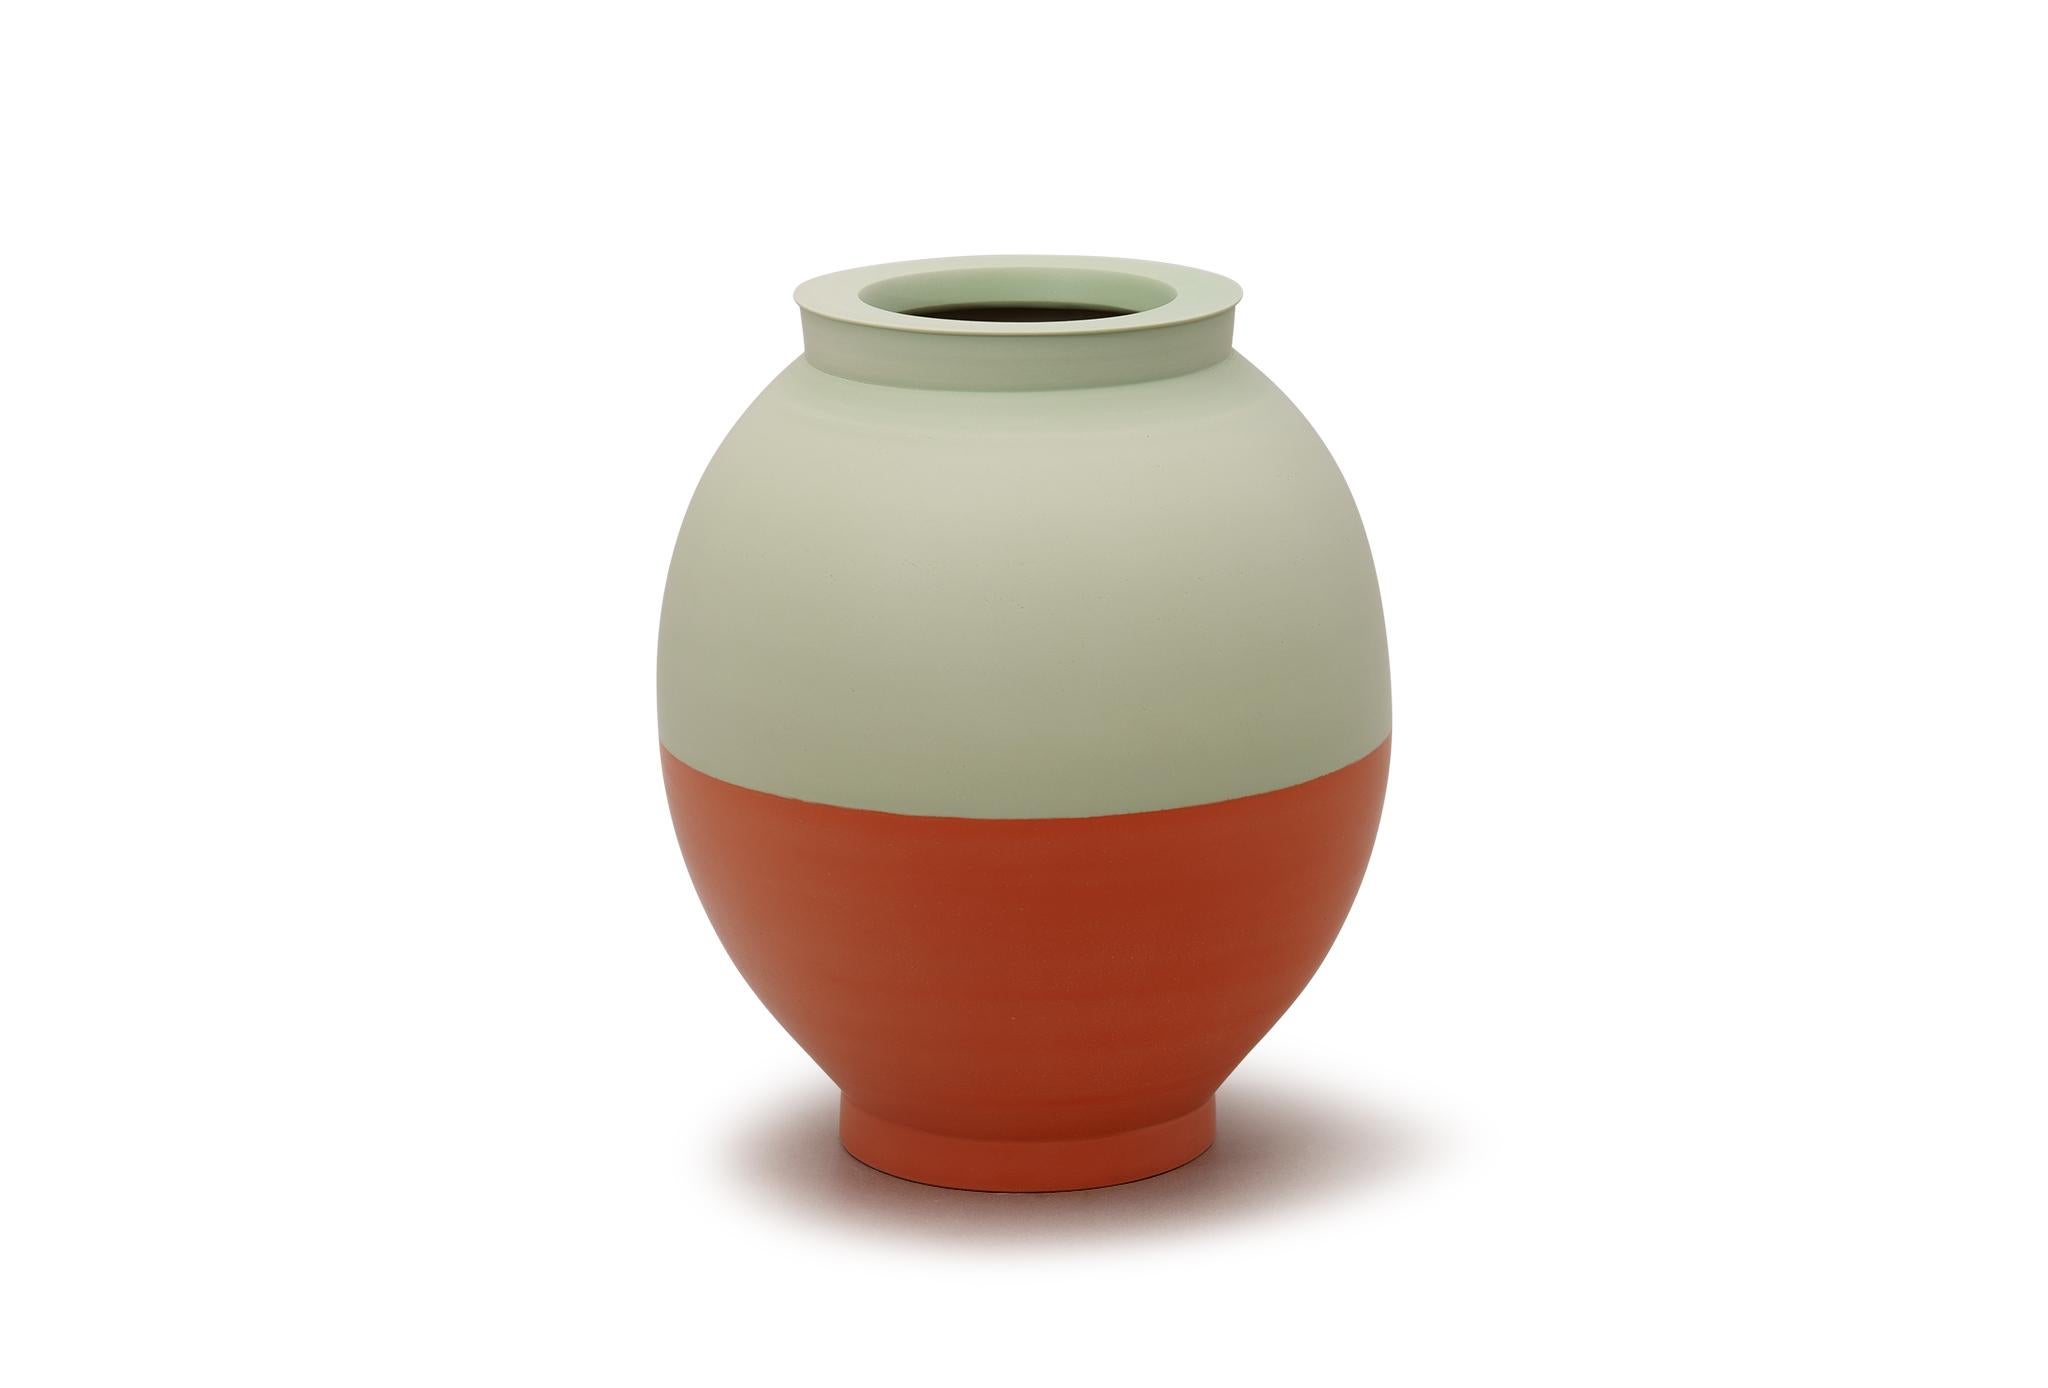 Halbe Vase von Jung Hong
Einzigartiges Stück
Abmessungen: B 28 x T 28 x H 32 cm
MATERIALIEN: Porzellan.

Ich verwende die Technik des 'sang-gam' (=Einlegearbeit) mit meinem speziellen Werkzeug, das ich selbst hergestellt habe, und kreiere zarte und